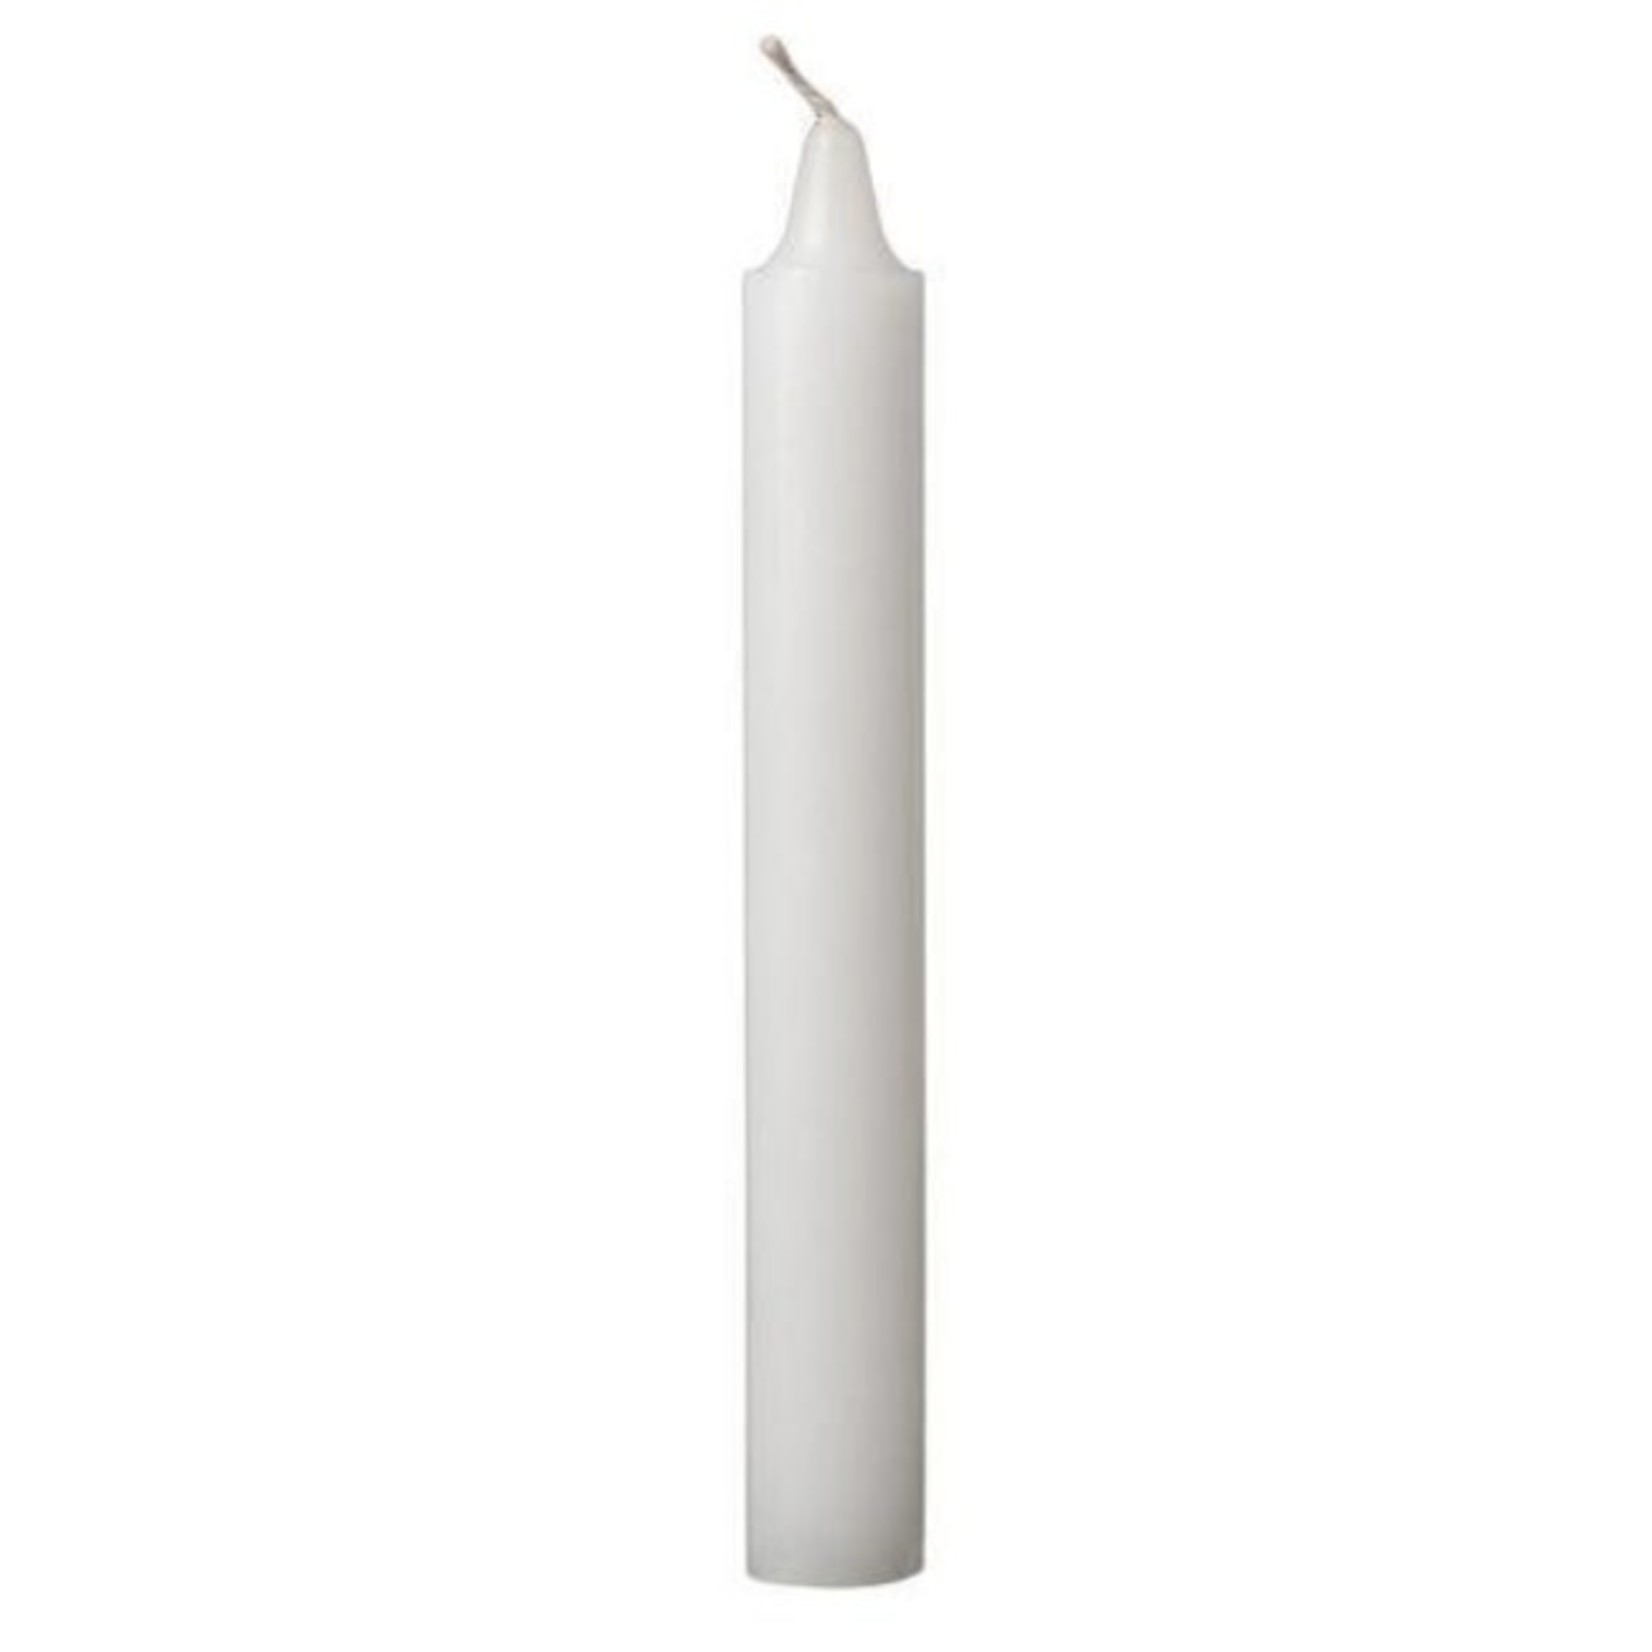 Govinda 6” Spell candles